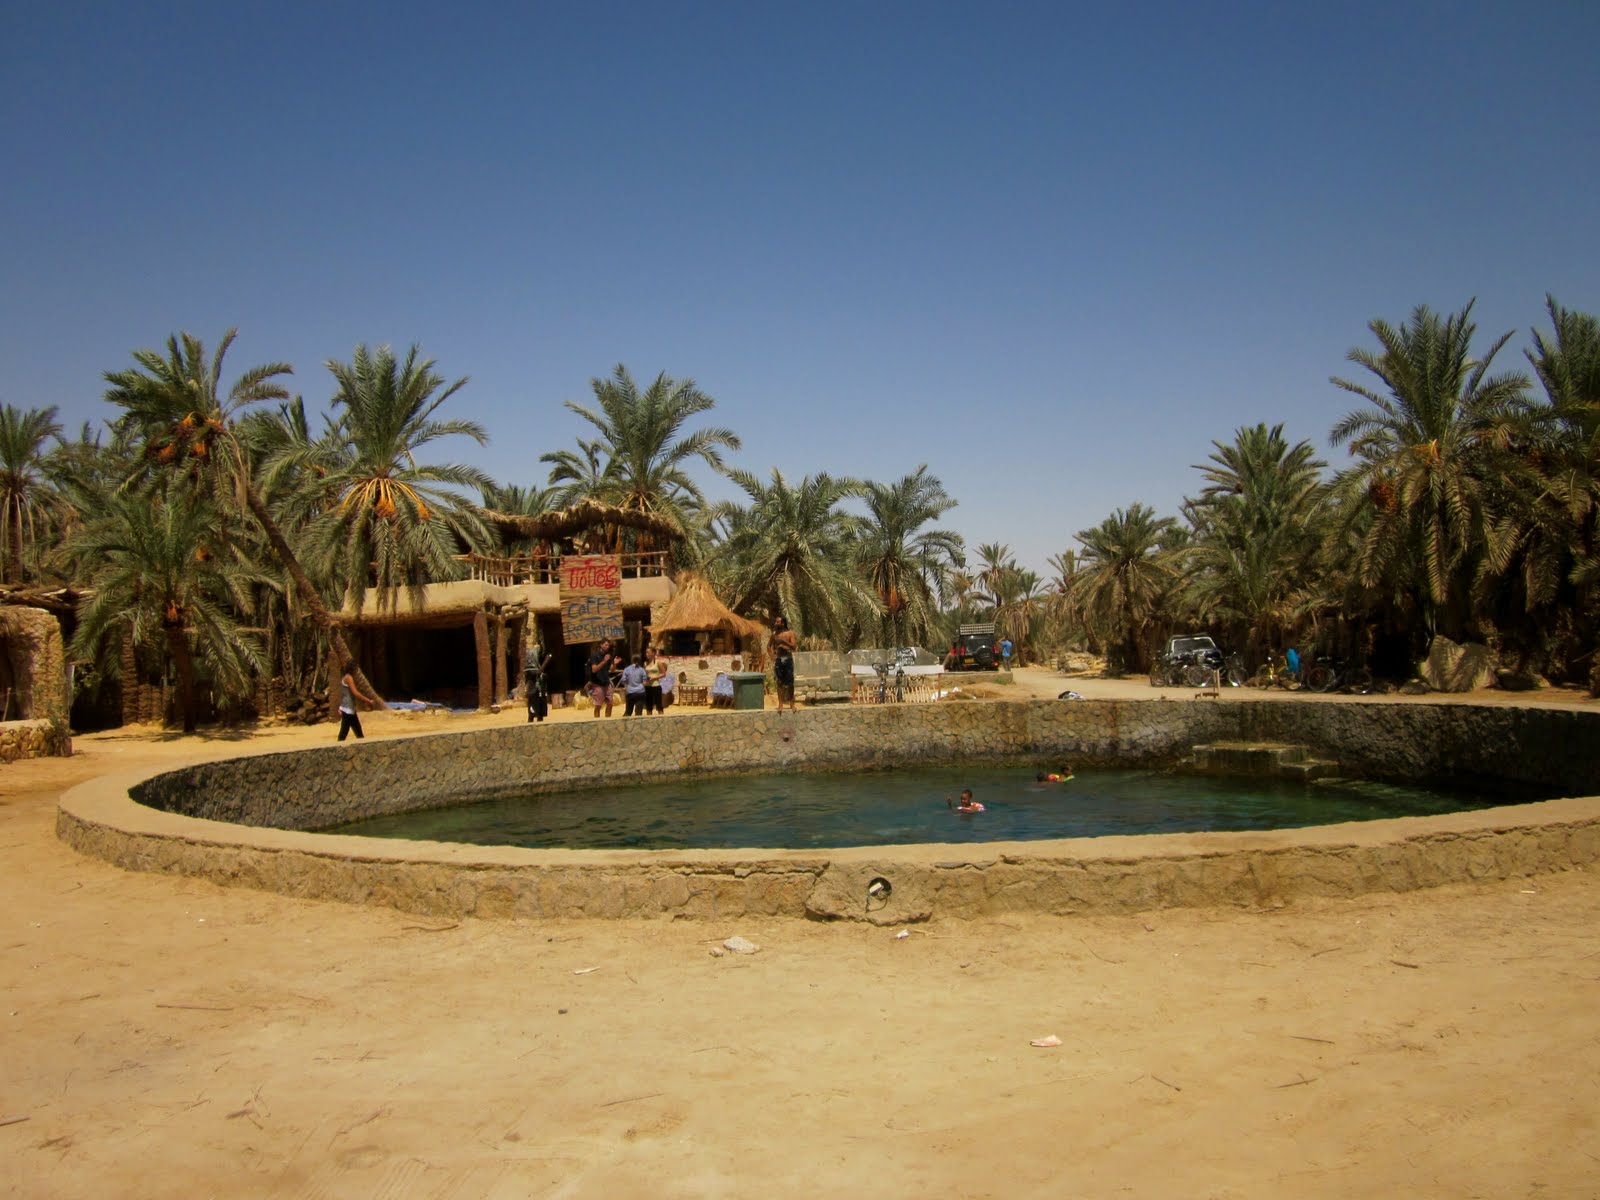 Siwa. Egypt